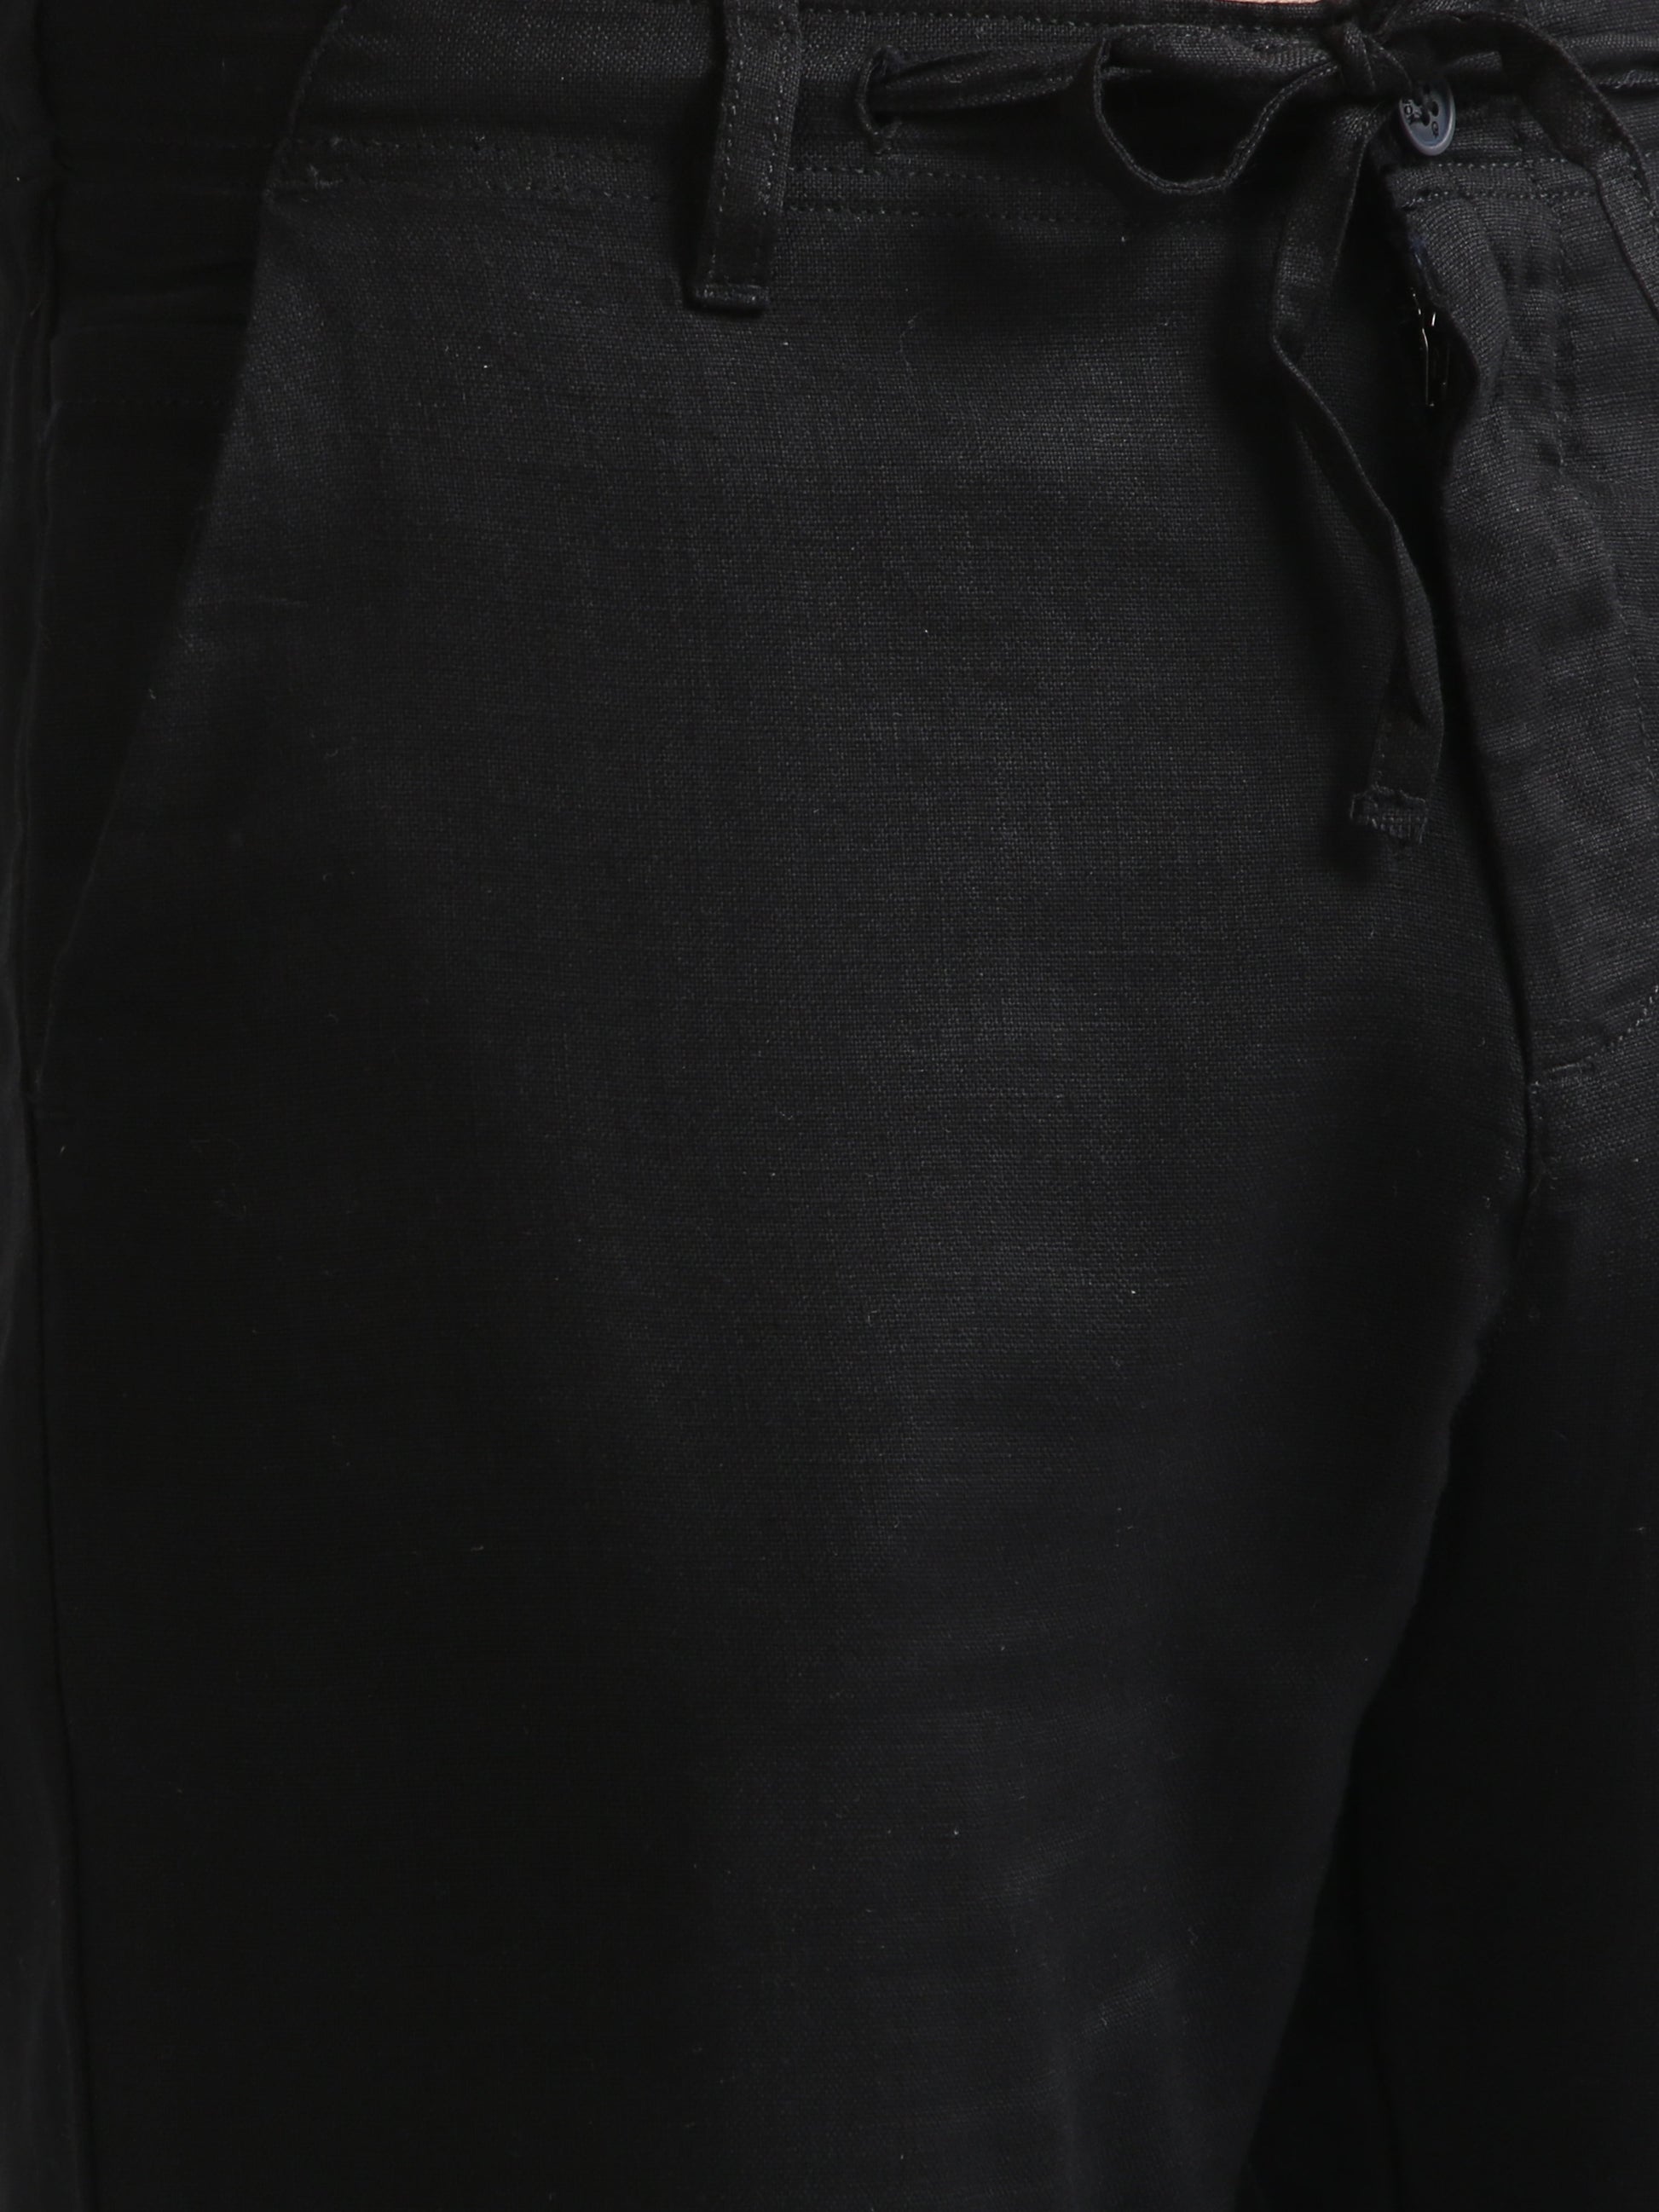 Black Drawcod Linen Fashion Pant